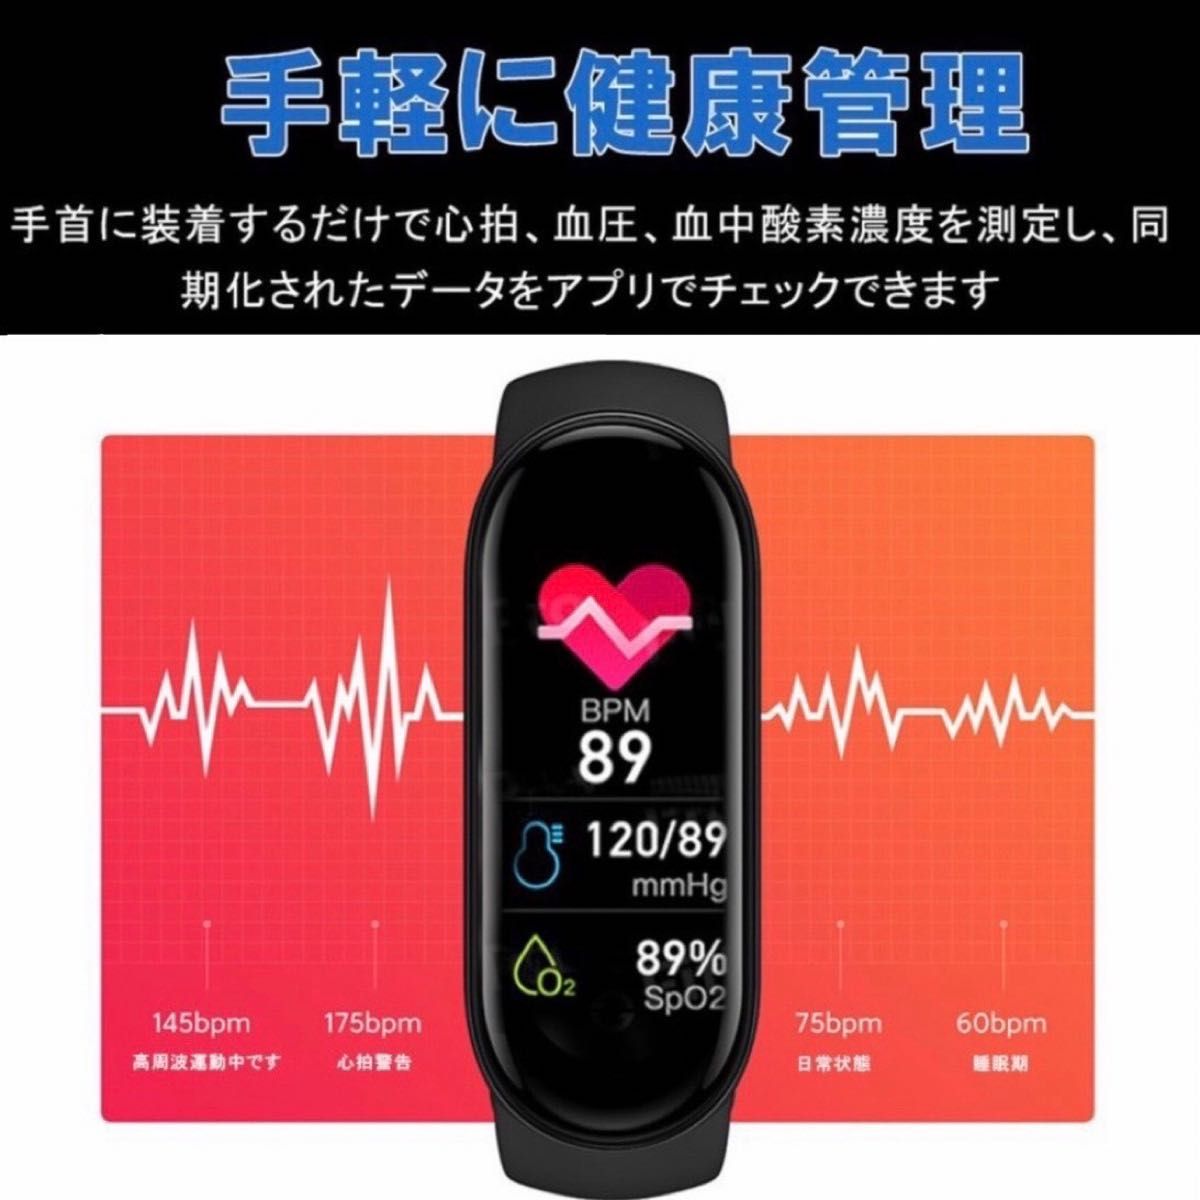 最新モデル 多機能 スマートウォッチ 腕時計 健康管理 血圧 心拍 歩数計 待受画面自由変更 IP67 防水 黒 バンド2個入り